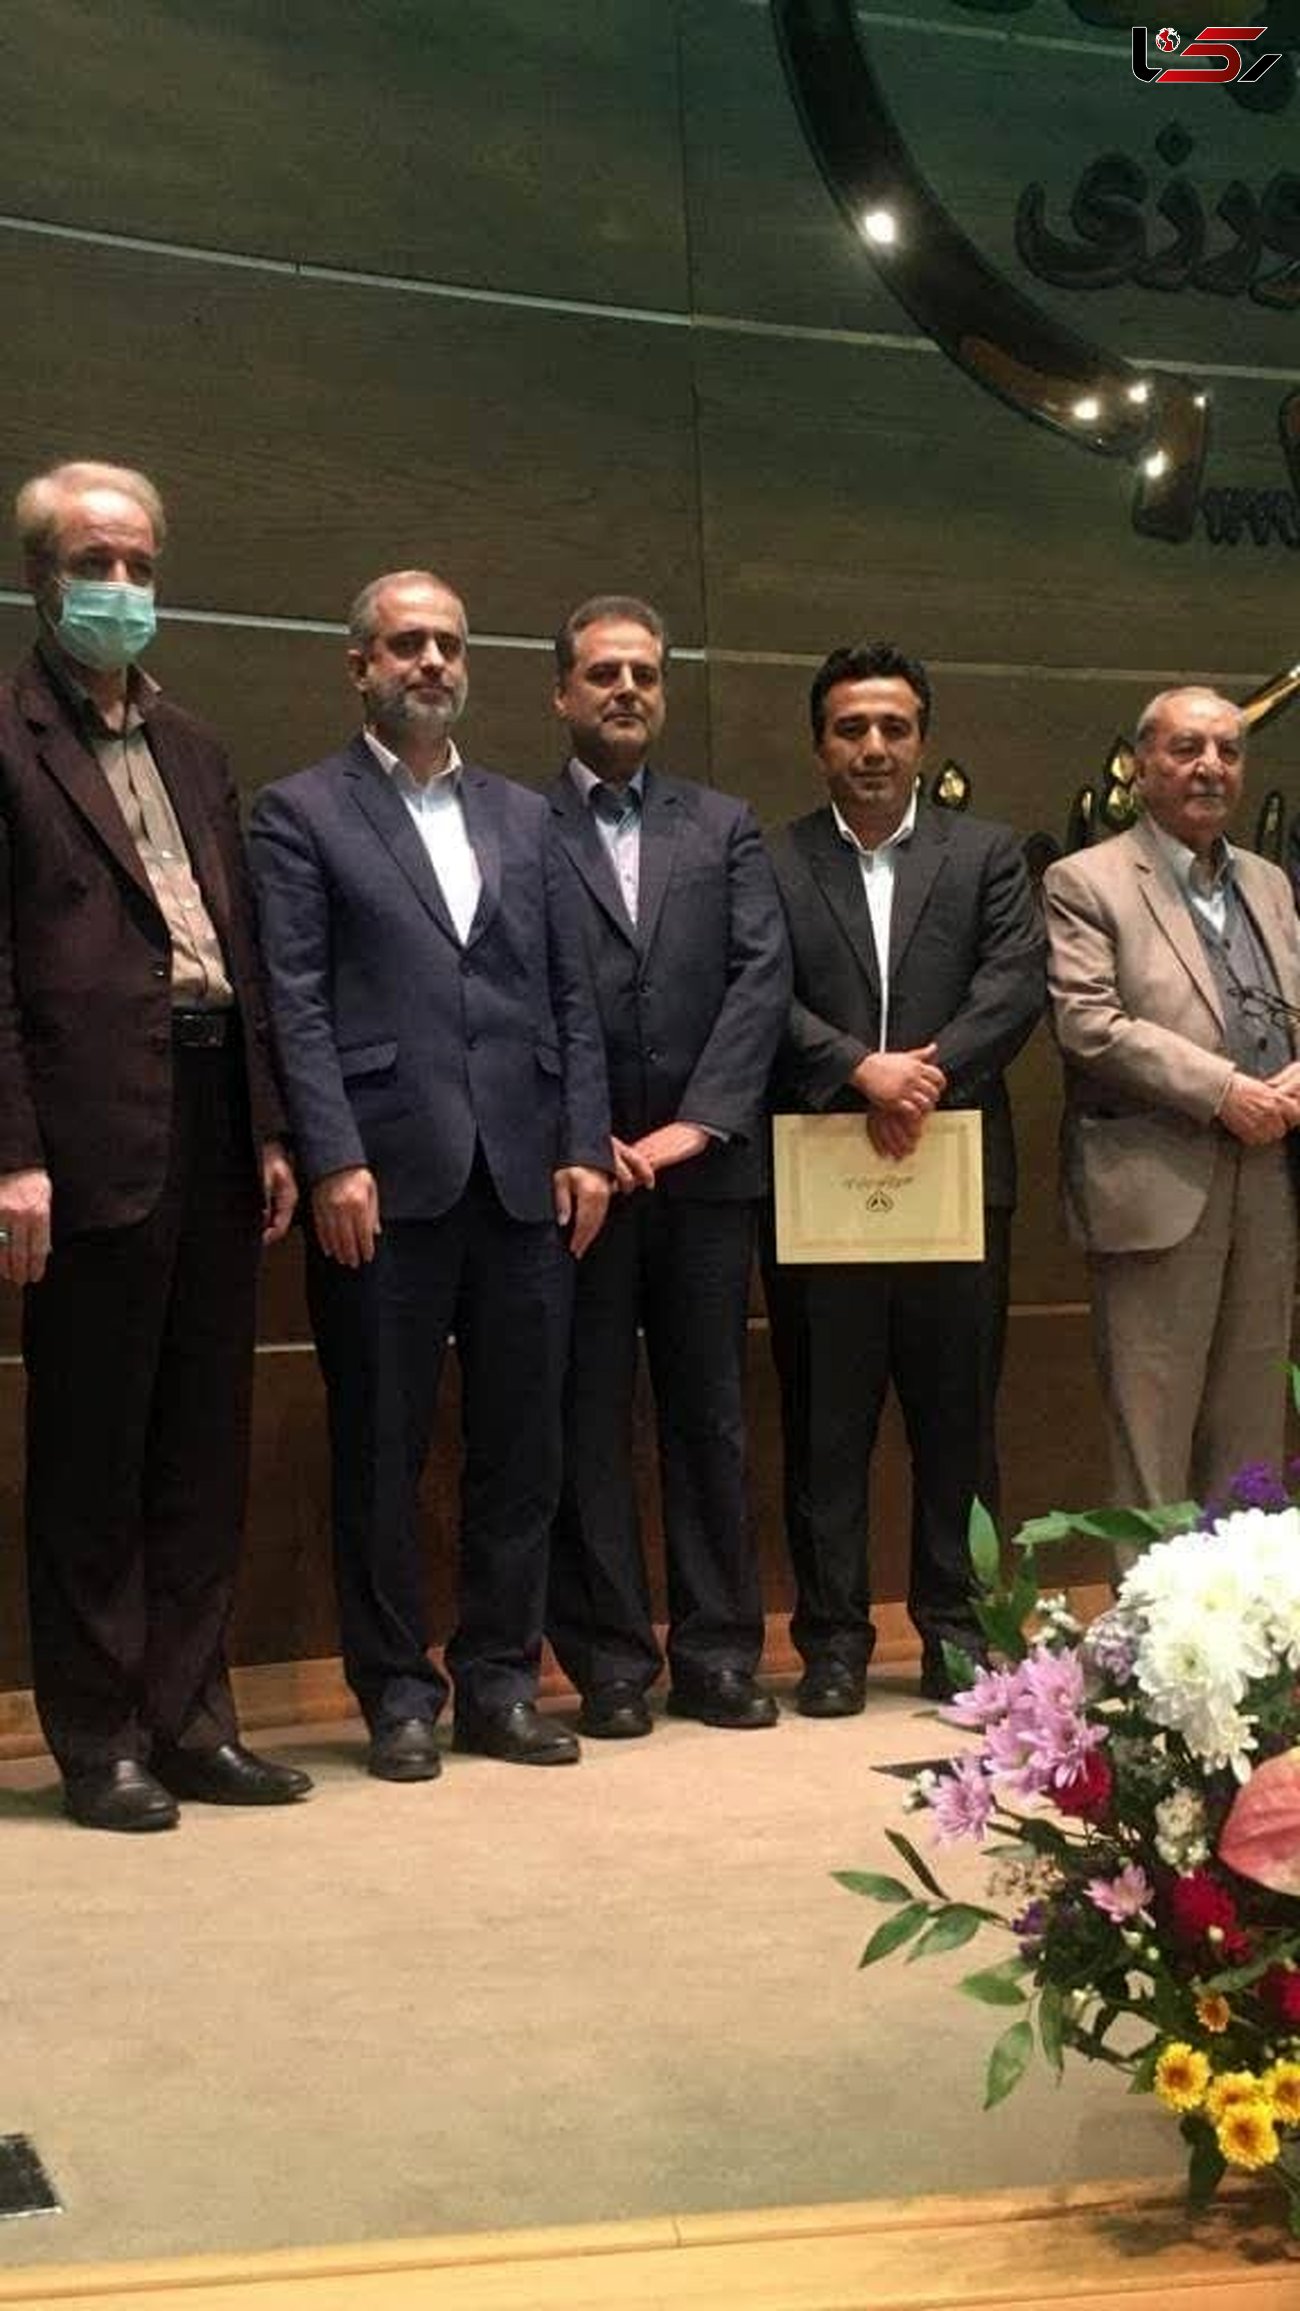 مدیر کل دامپزشکی قزوین به عنوان مدیر کل نمونه کشوری انتخاب شد
